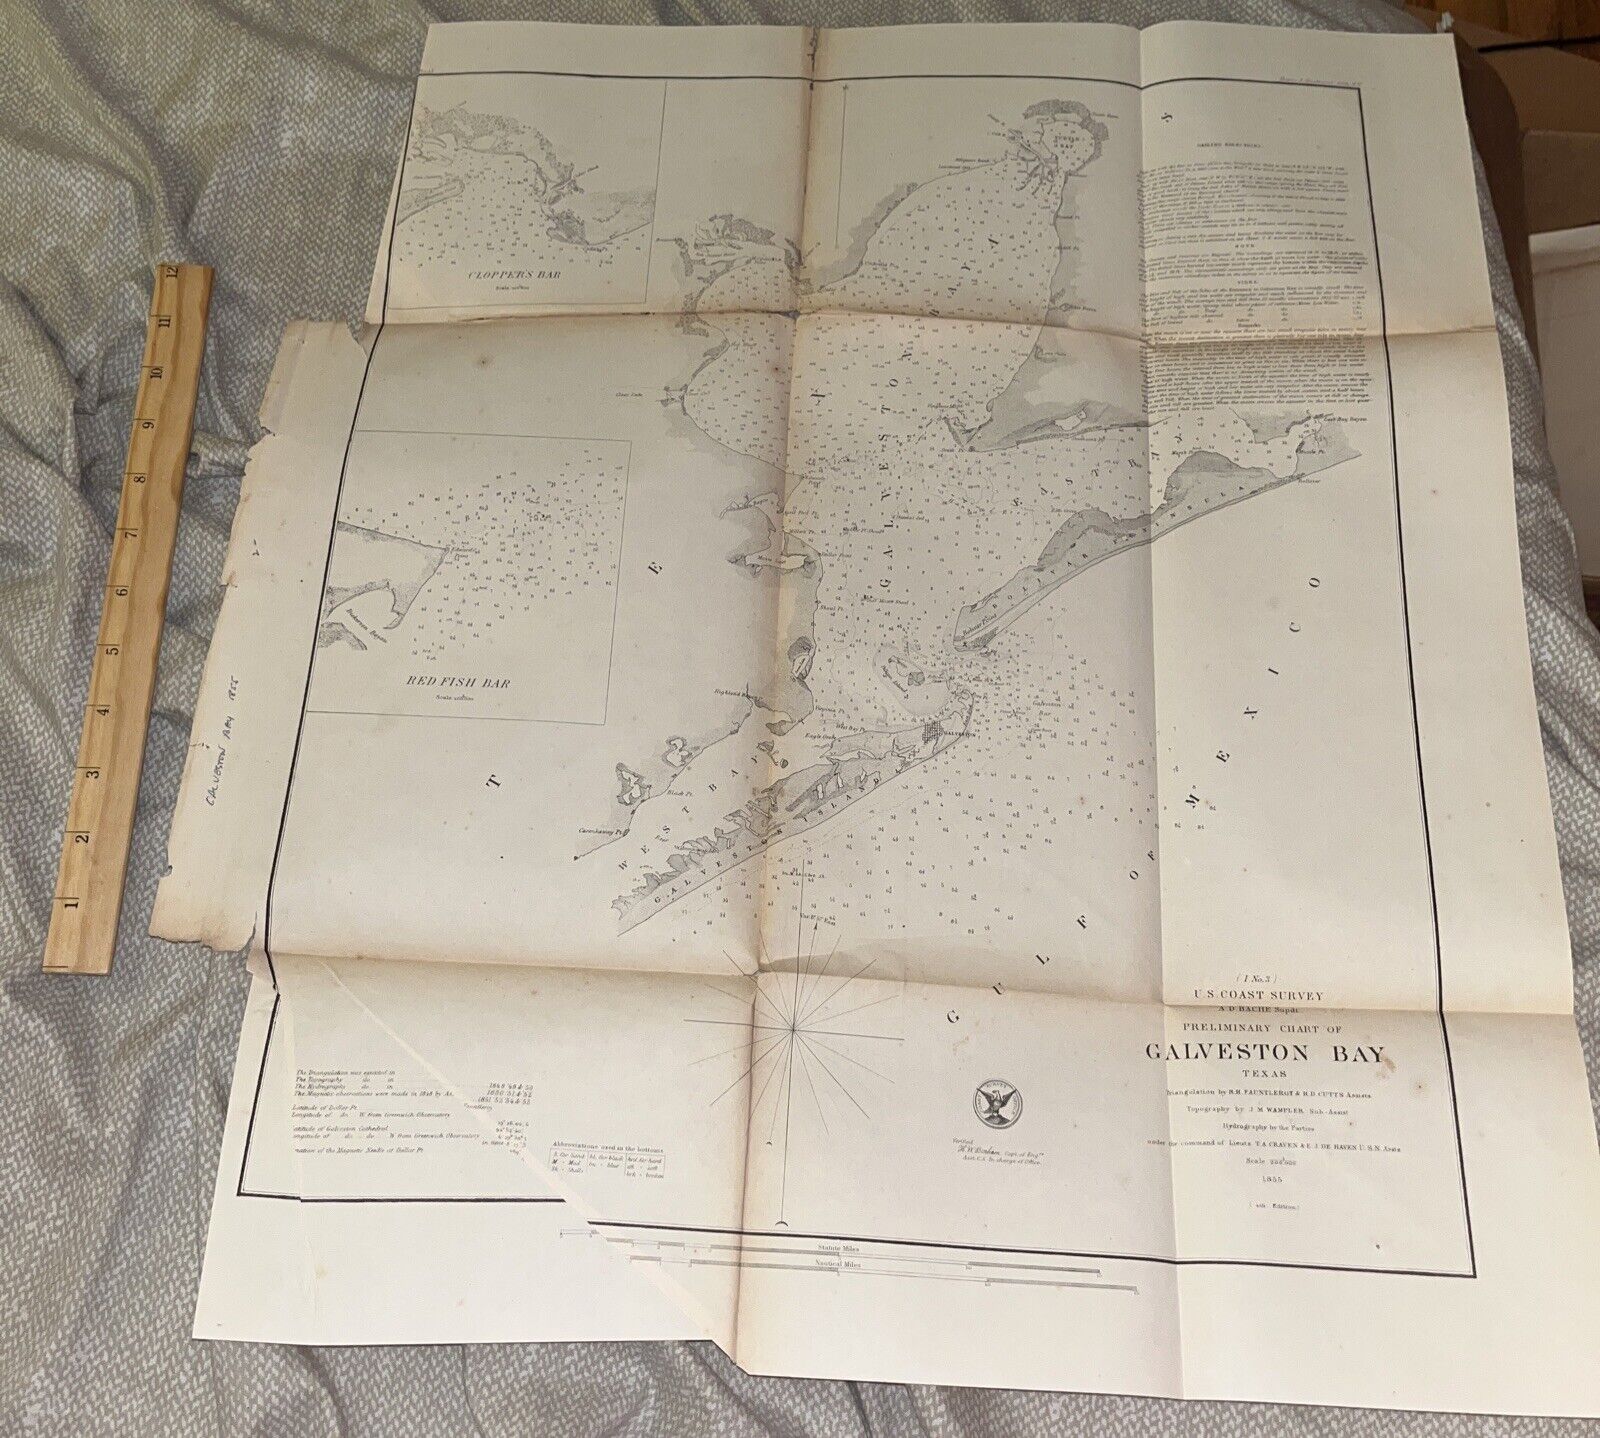 Antique US COAST SURVEY Bache Preliminary Chart of Galveston Bay Texas 1855 4th